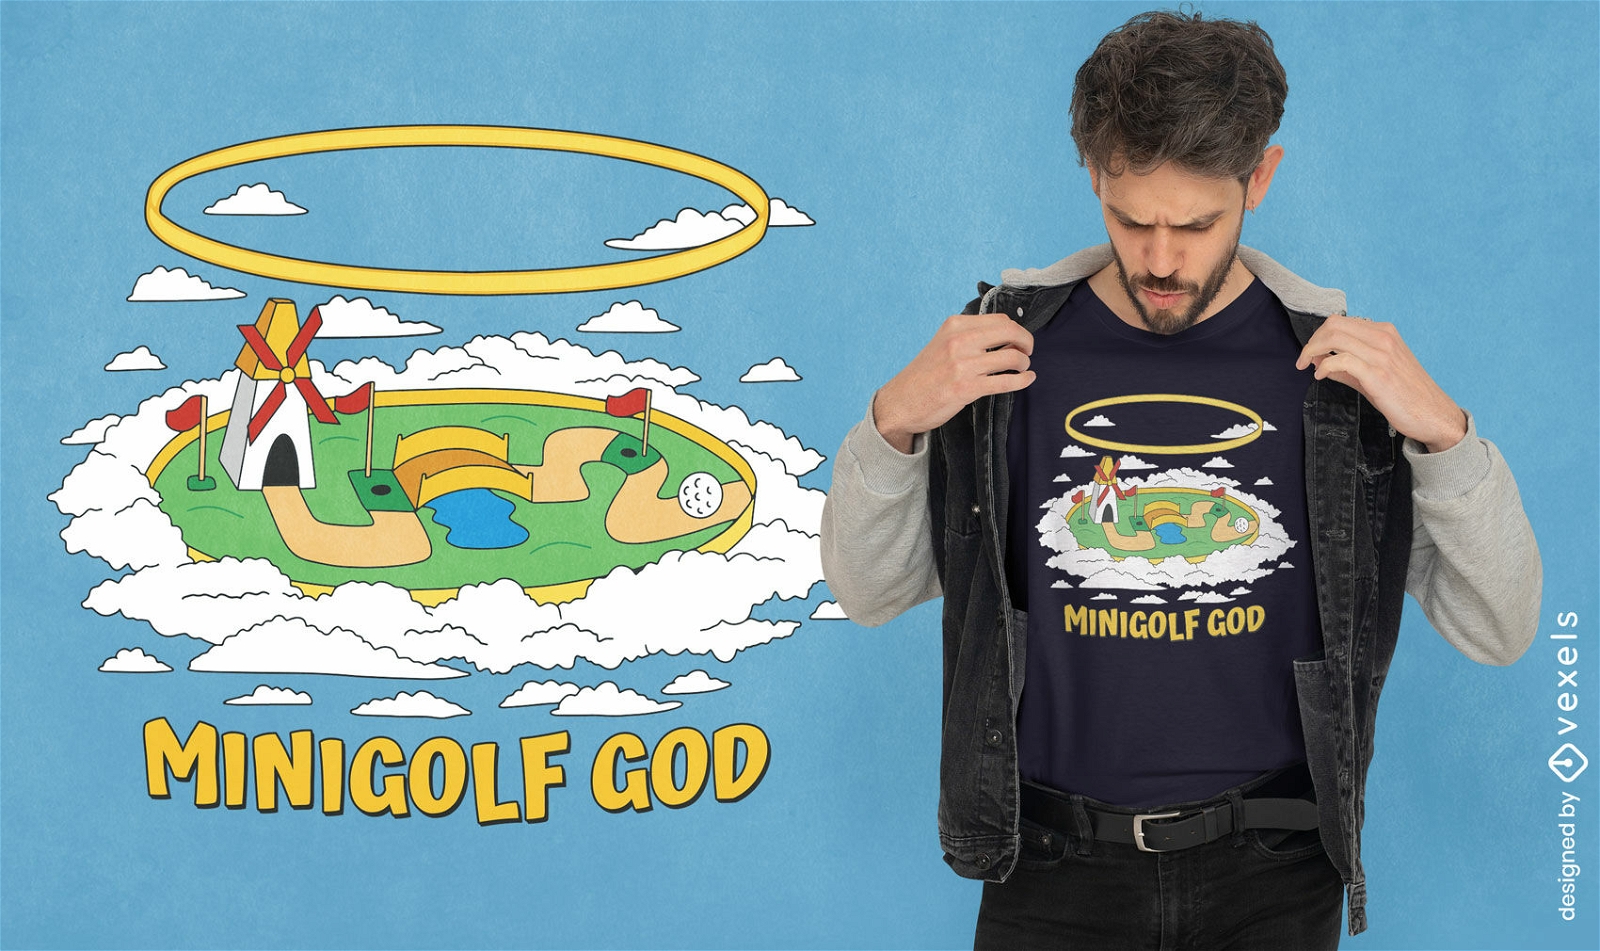 Juego de minigolf en dise?o de camiseta en la nube.